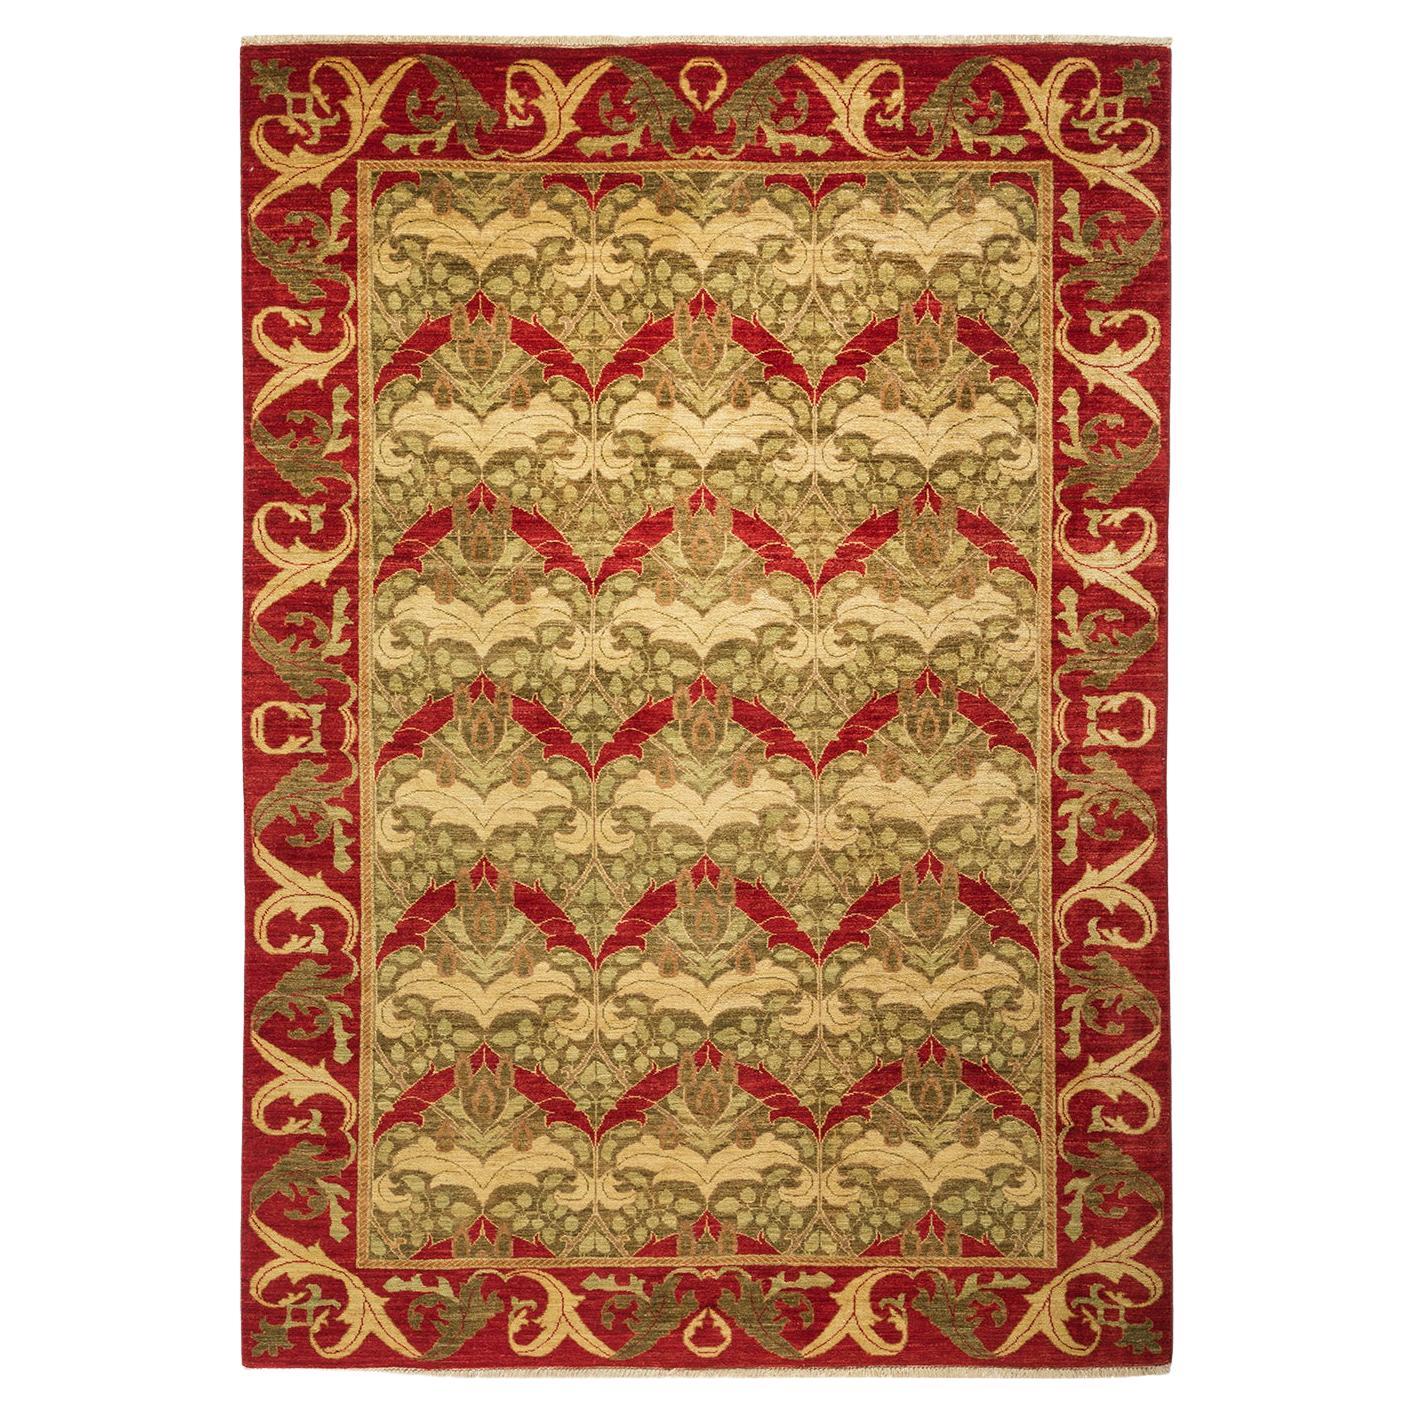 Handgefertigter roter Teppich im zeitgenössischen Arts & Crafts-Stil, Unikat